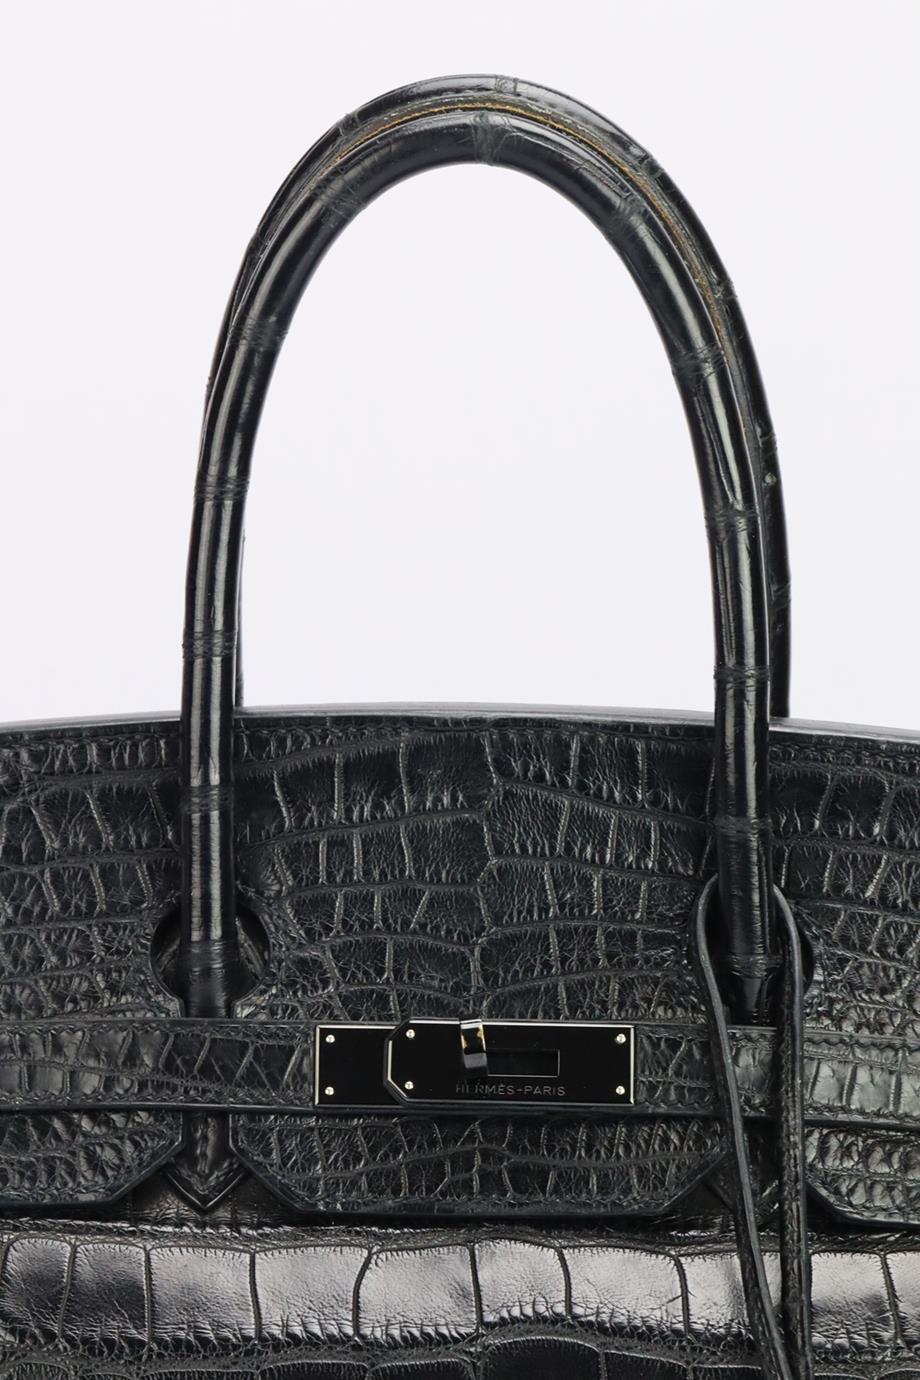 Hermès 2010 Birkin 35Cm So Black Matte Alligator Bag. Modèle : Birkin. Fabriqué en France, ce sac à main Birkin 35cm 2010 a été réalisé en alligator mat à l'extérieur et en cuir à l'intérieur. Cette pièce est décorée d'une quincaillerie en PVD noir